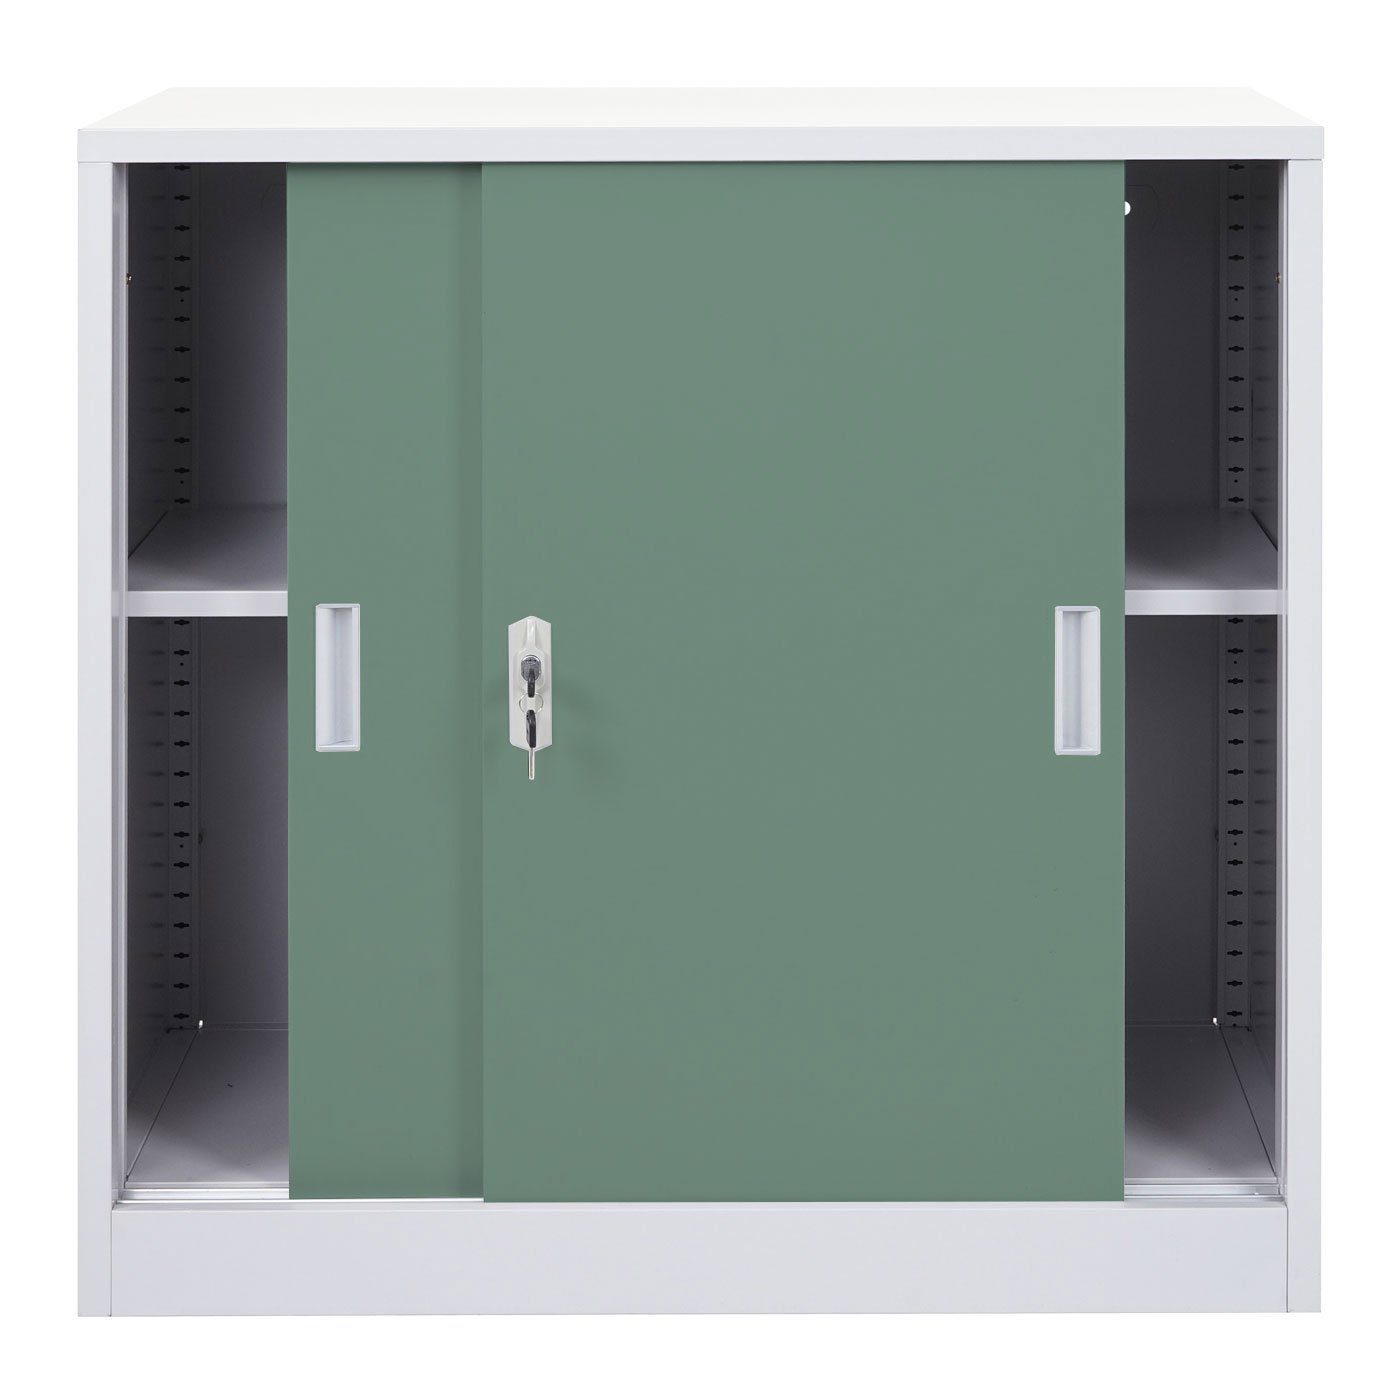 MCW-F41 grün 1 Regalboden 2 Schlüssel MCW Schiebetüren, Aktenschrank inklusive, Metallschrank, 2